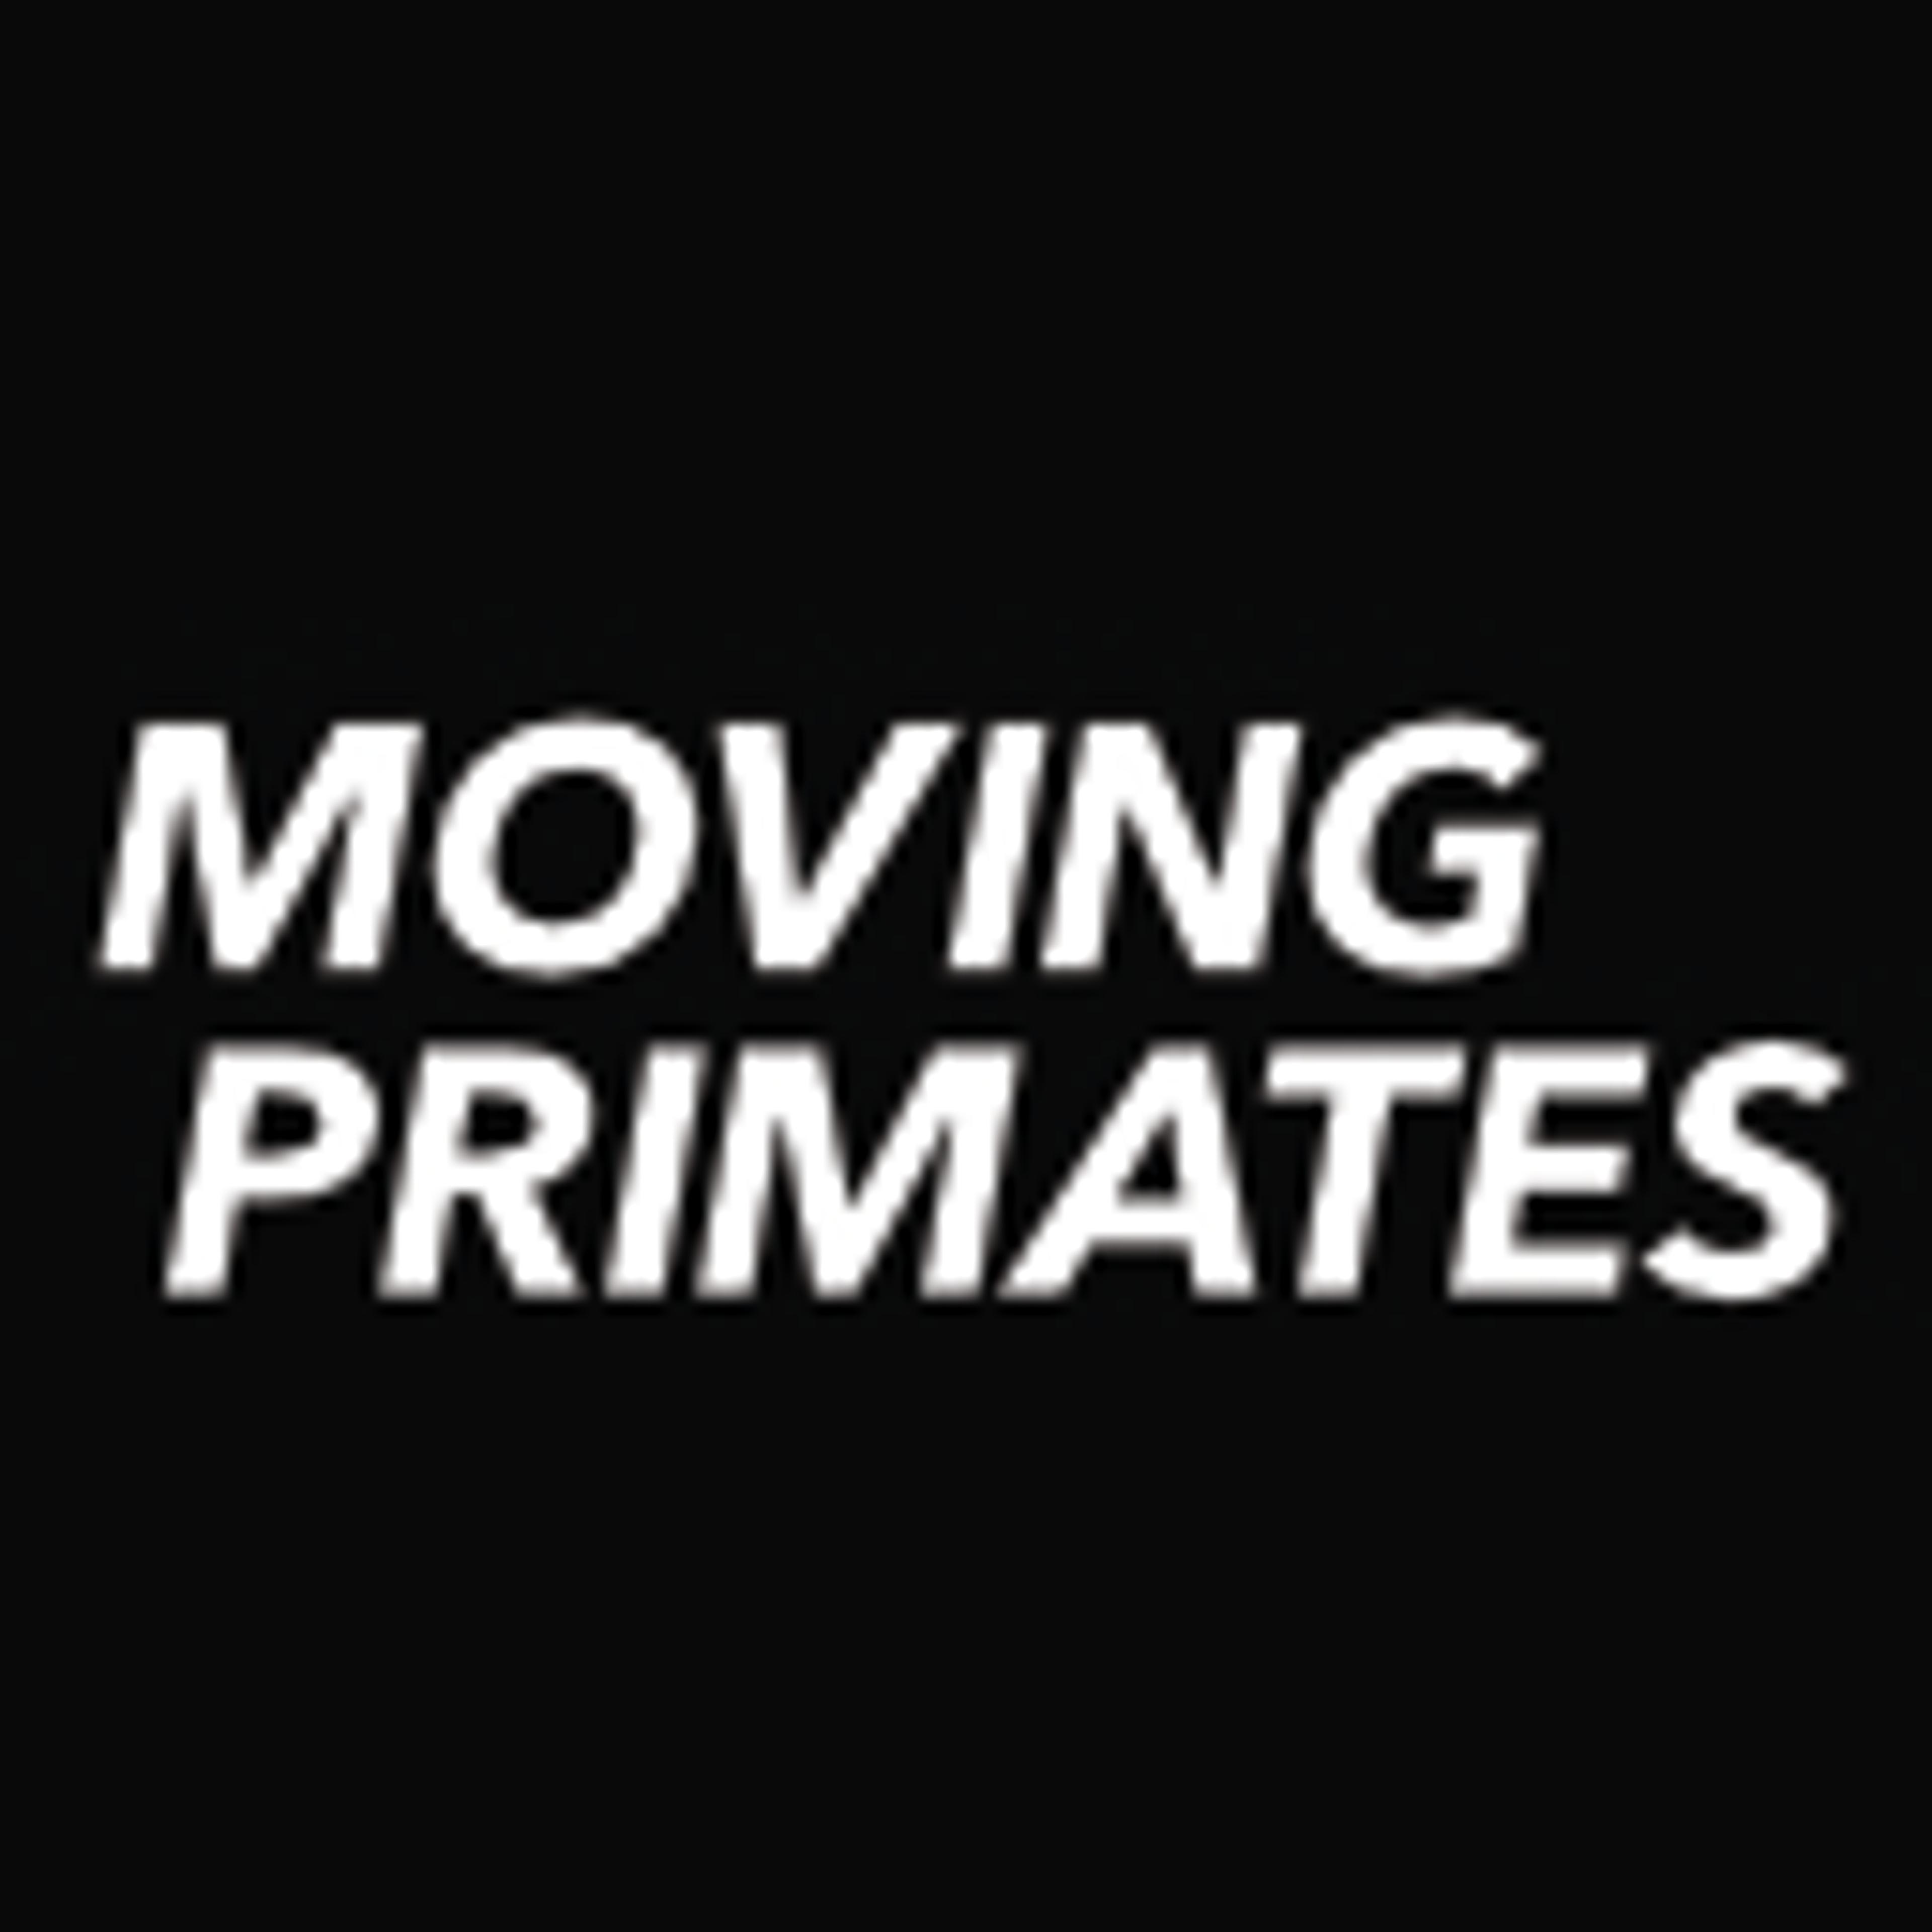 Moving Primates